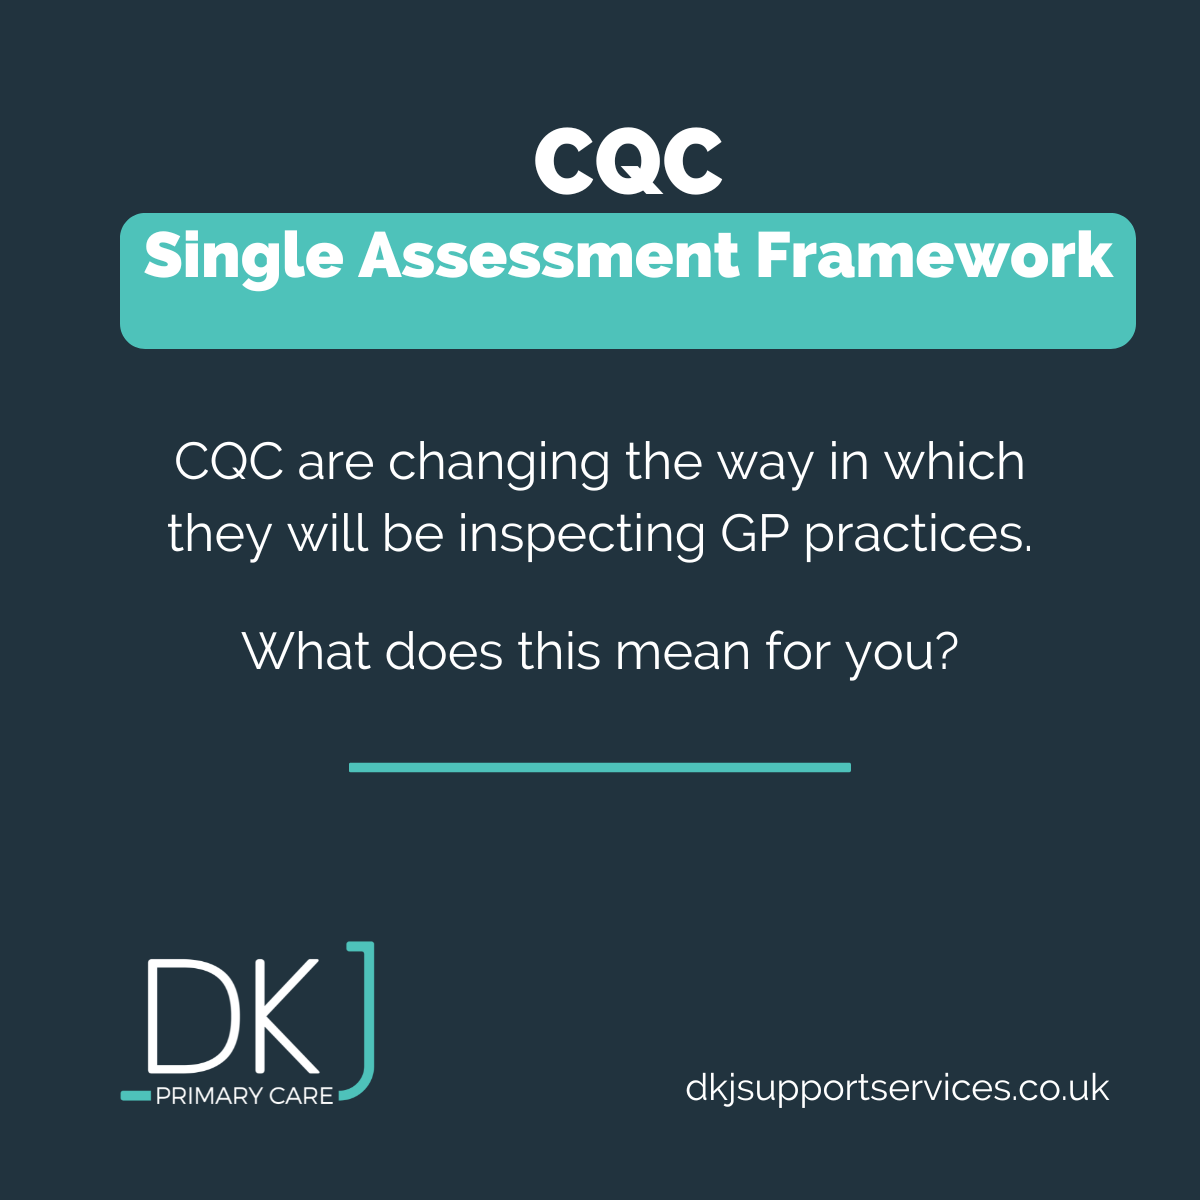 Single Assessment Framework